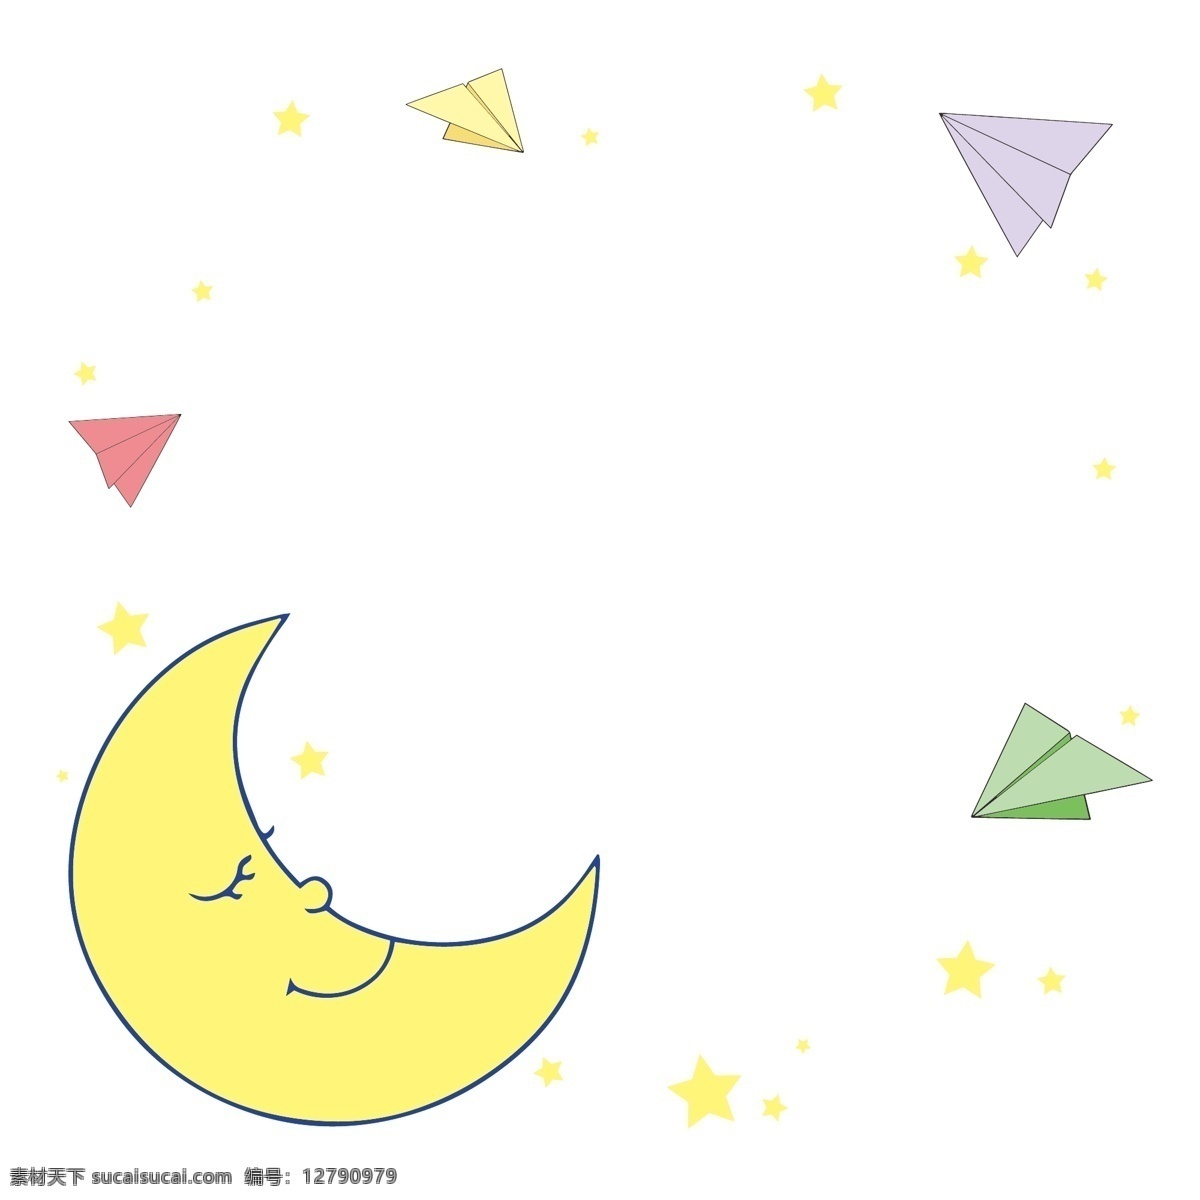 童话 世界 梦想 里 纸 飞机 矢量 边框 童话世界 可爱 梦境 儿童 儿童节 童年 纸飞机 月亮 月牙 星星 天空 晚安 睡眠 睡觉